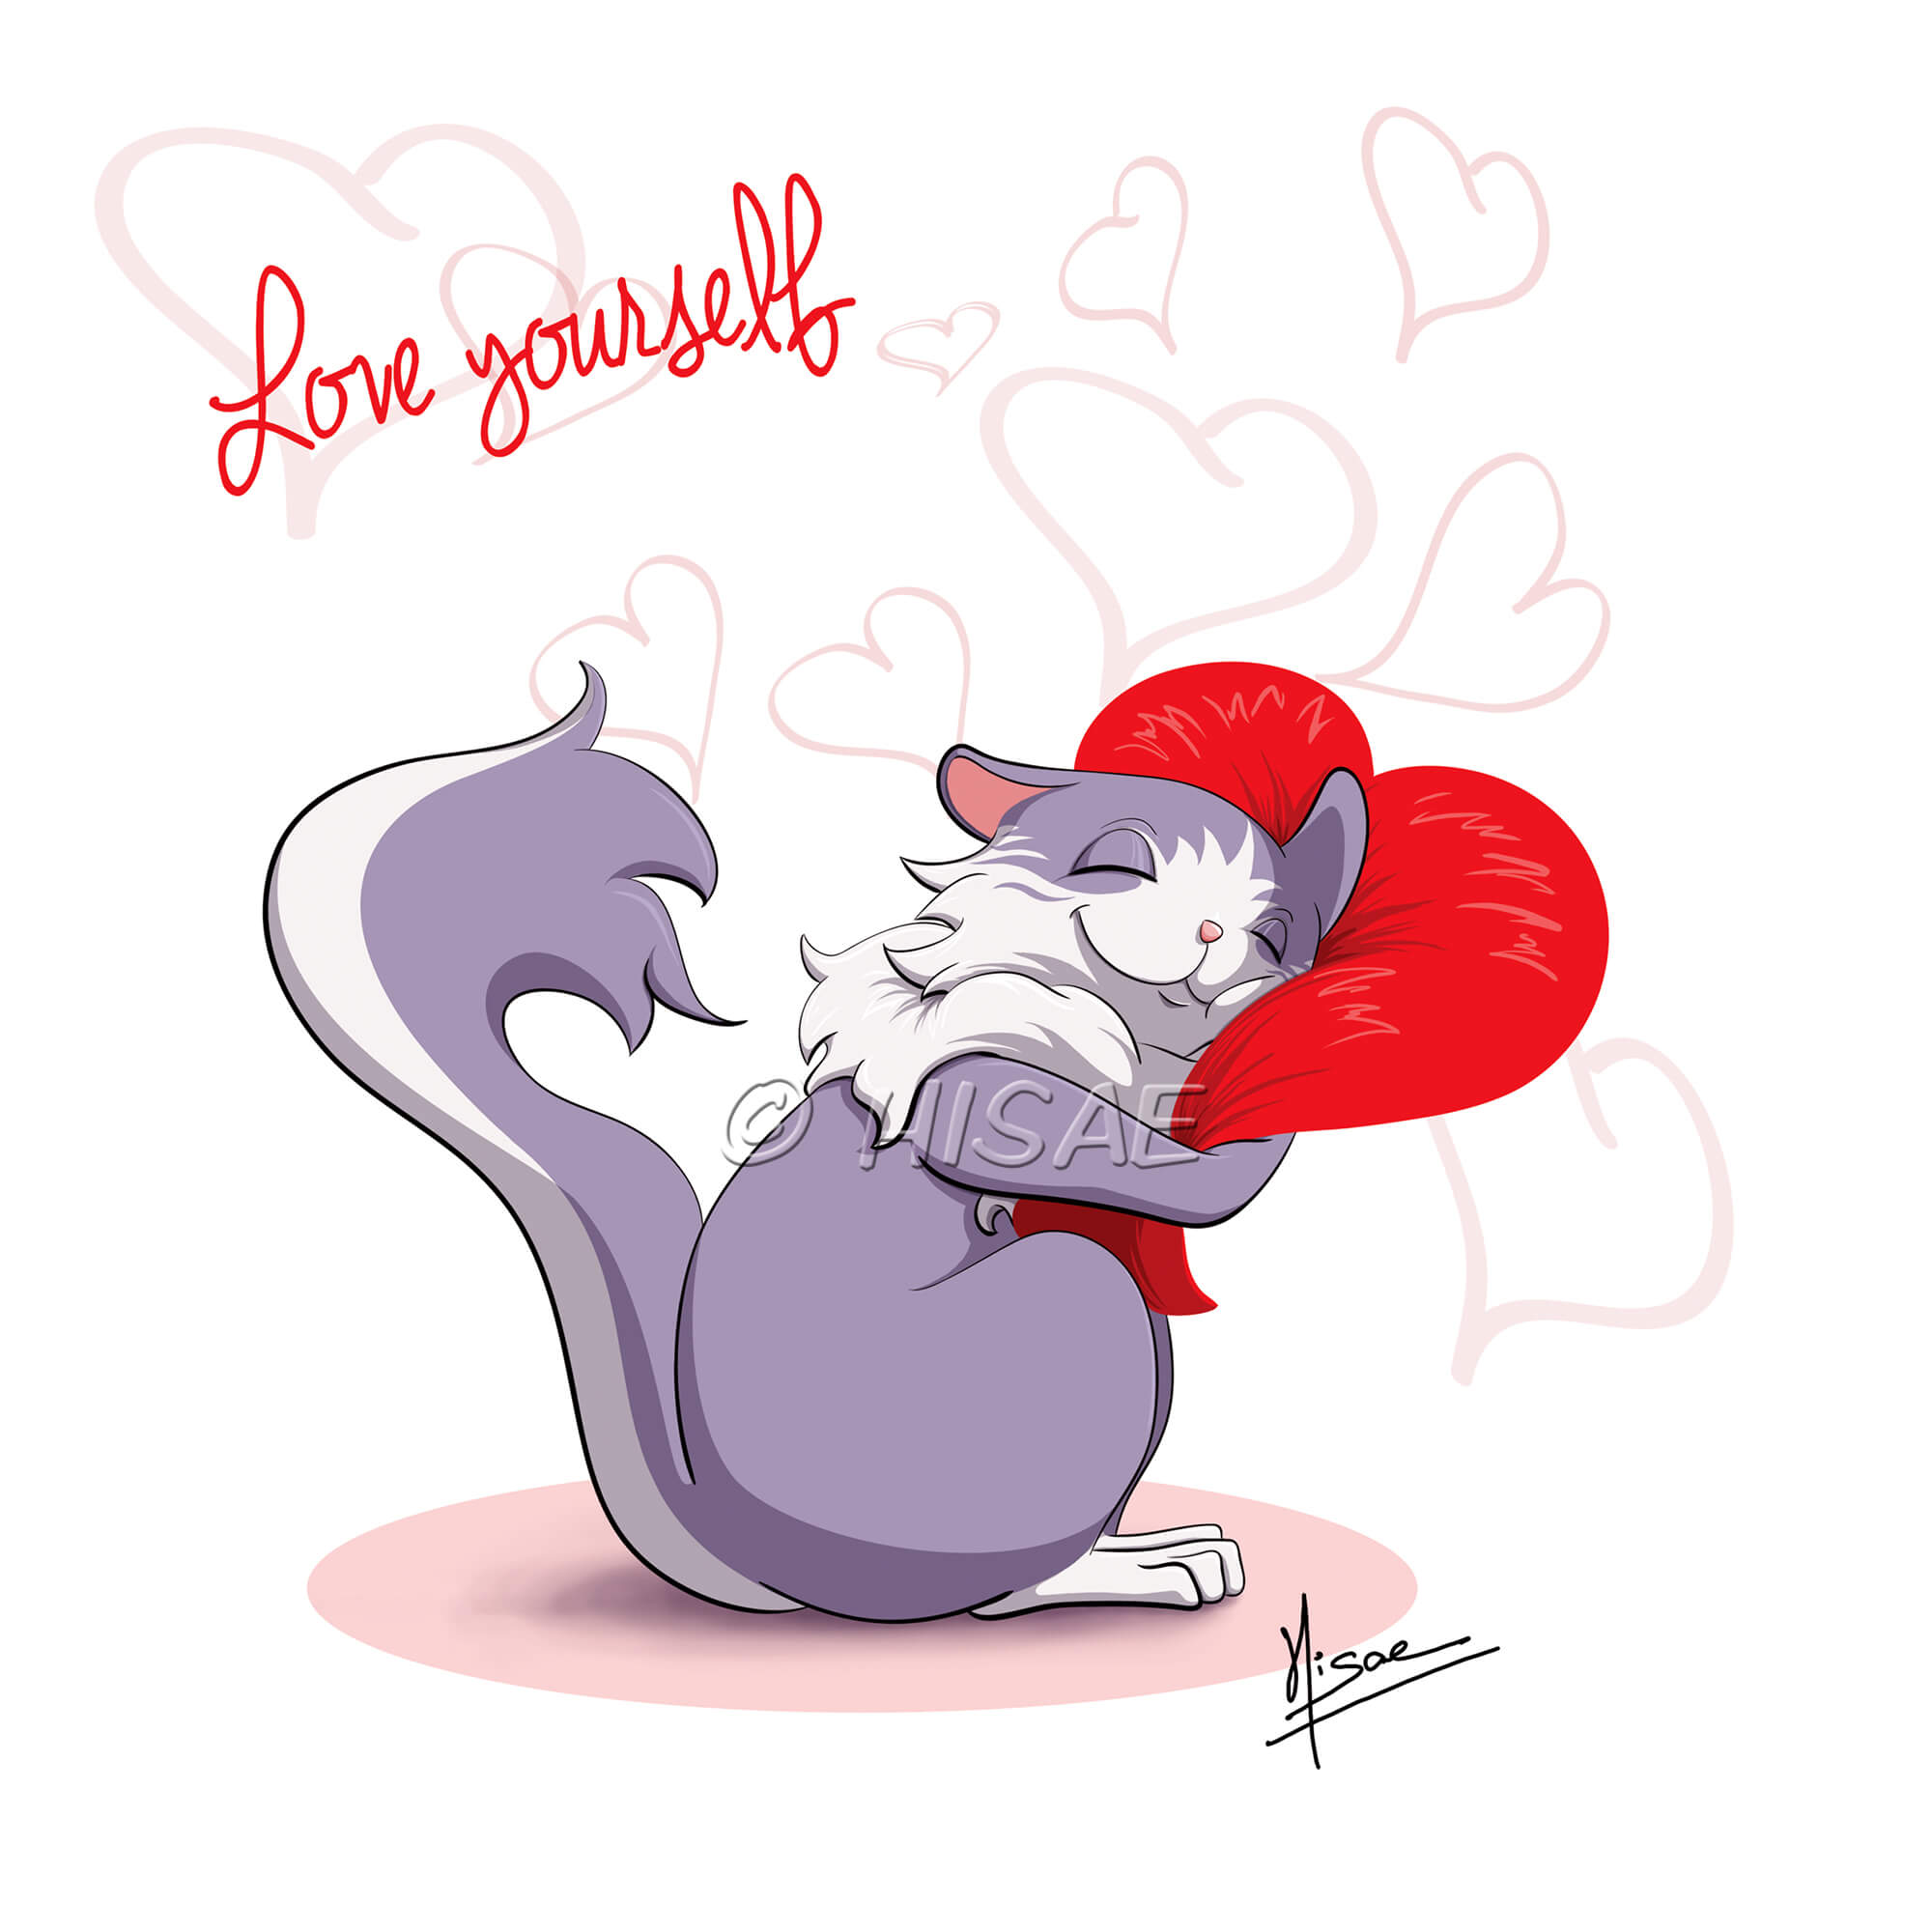 Dessin numérique sur l'amour de soi représentant un chat qui enlace un cœur ©Hisae illustrations